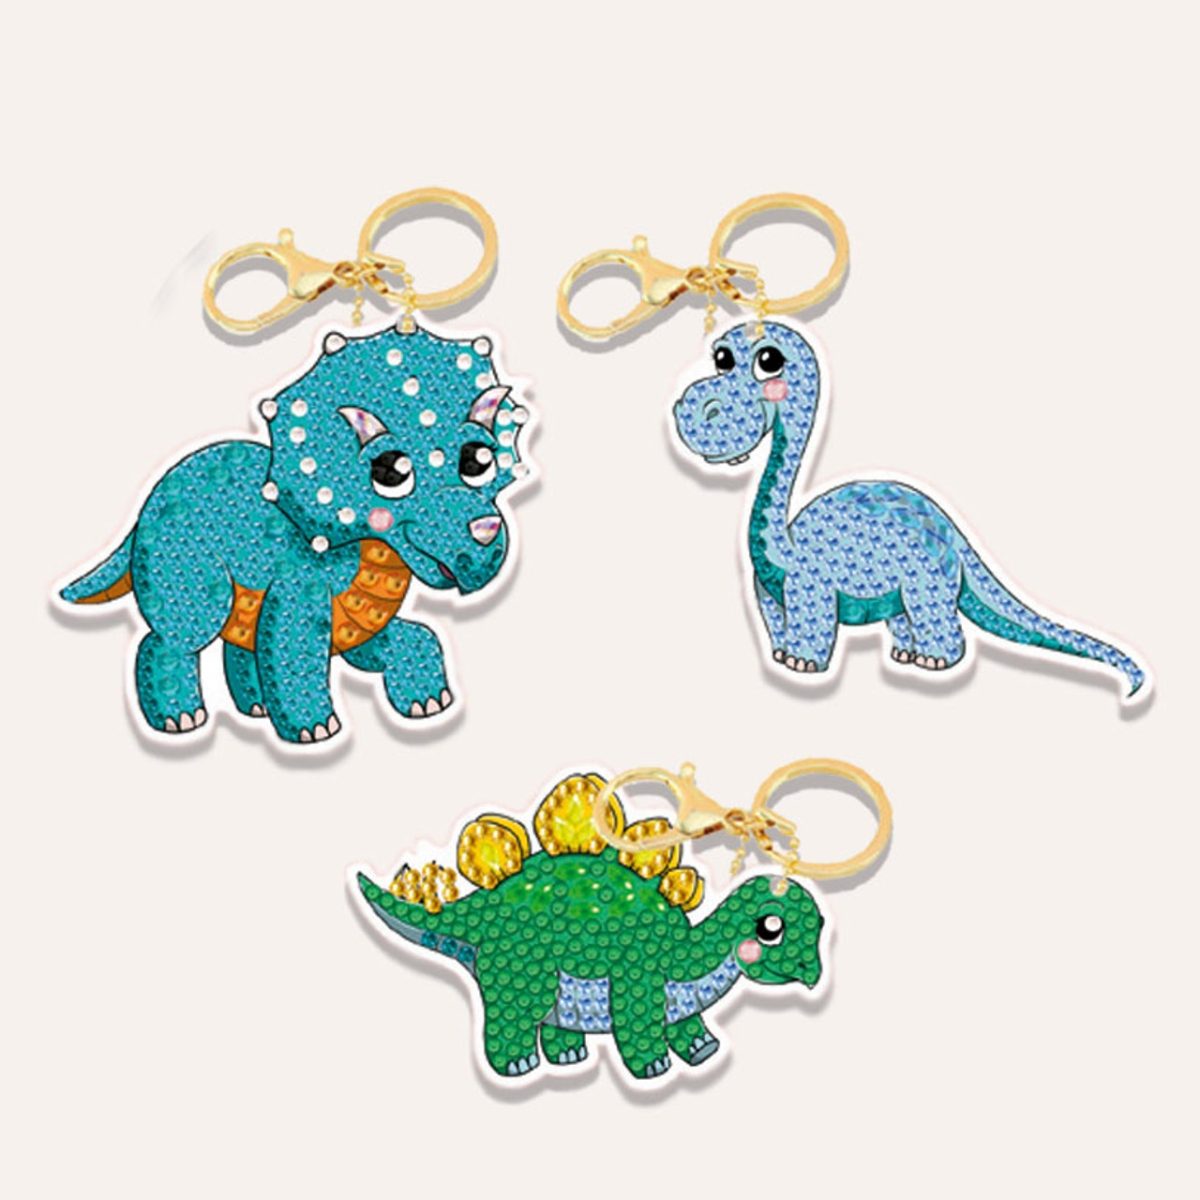 Dinosaur Friends - Crystal Art Keyring Kit (3 asstd)